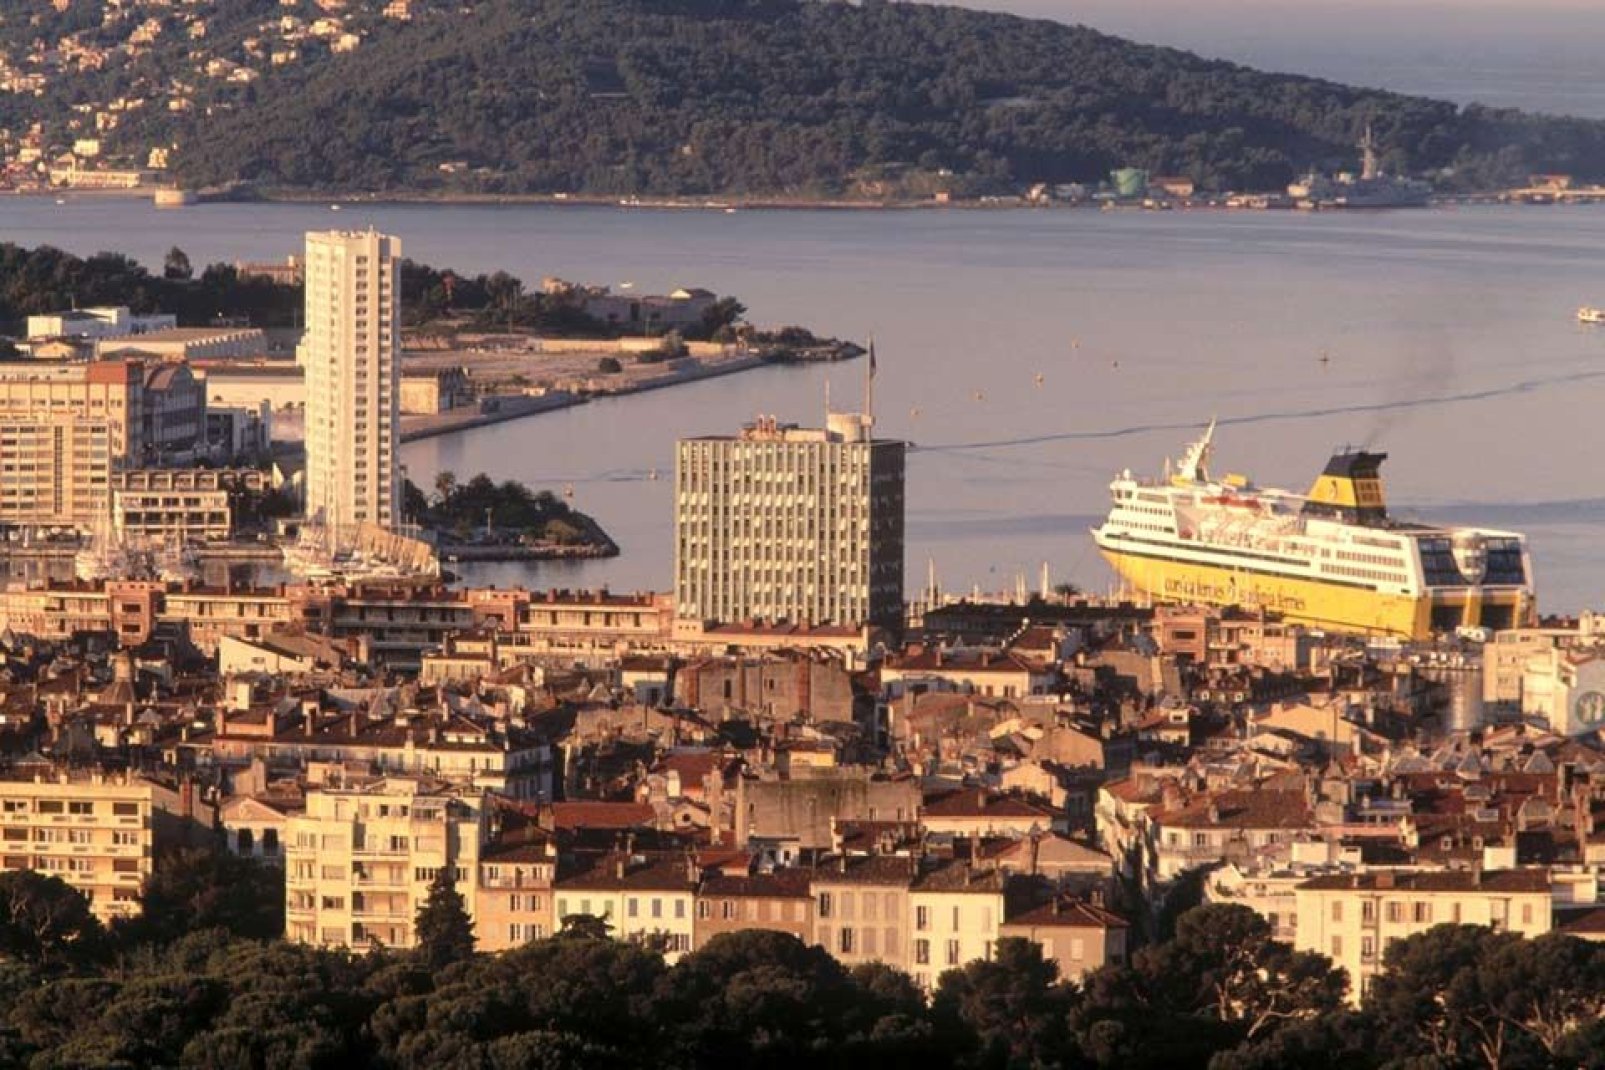 Si la ville ne possède pas encore la force d'attraction de sa voisine Cannes, elle voit tout de même son taux de visiteurs augmenter grâce à sa situation en bord de mer.